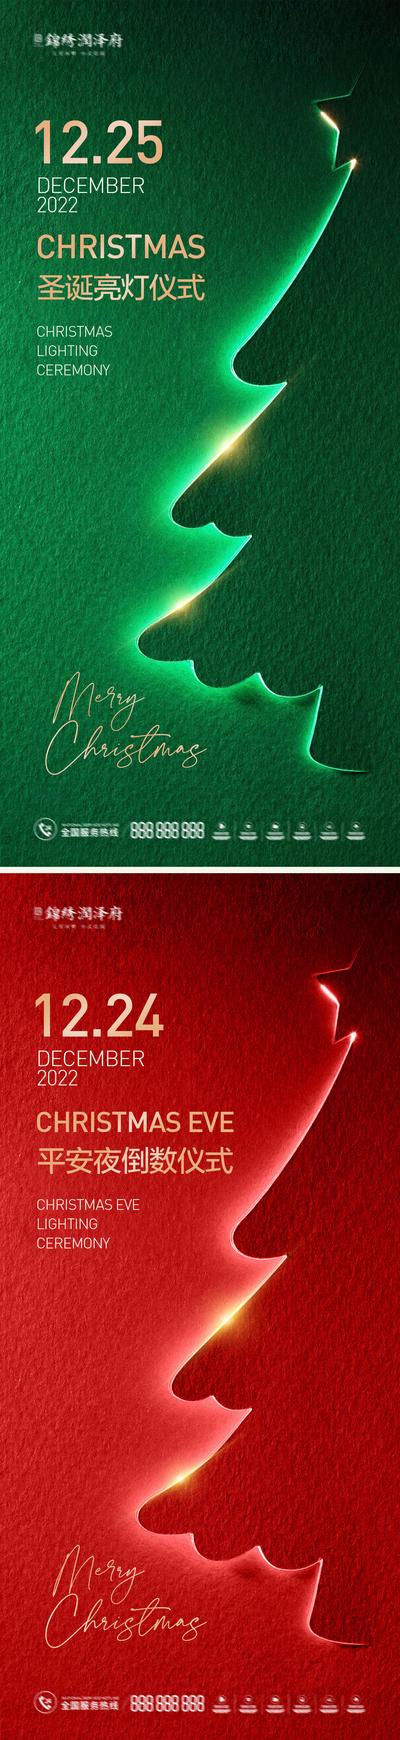 南门网 海报 地产 西方节日 圣诞节 圣诞树 亮灯 仪式 邀请函 质感 系列